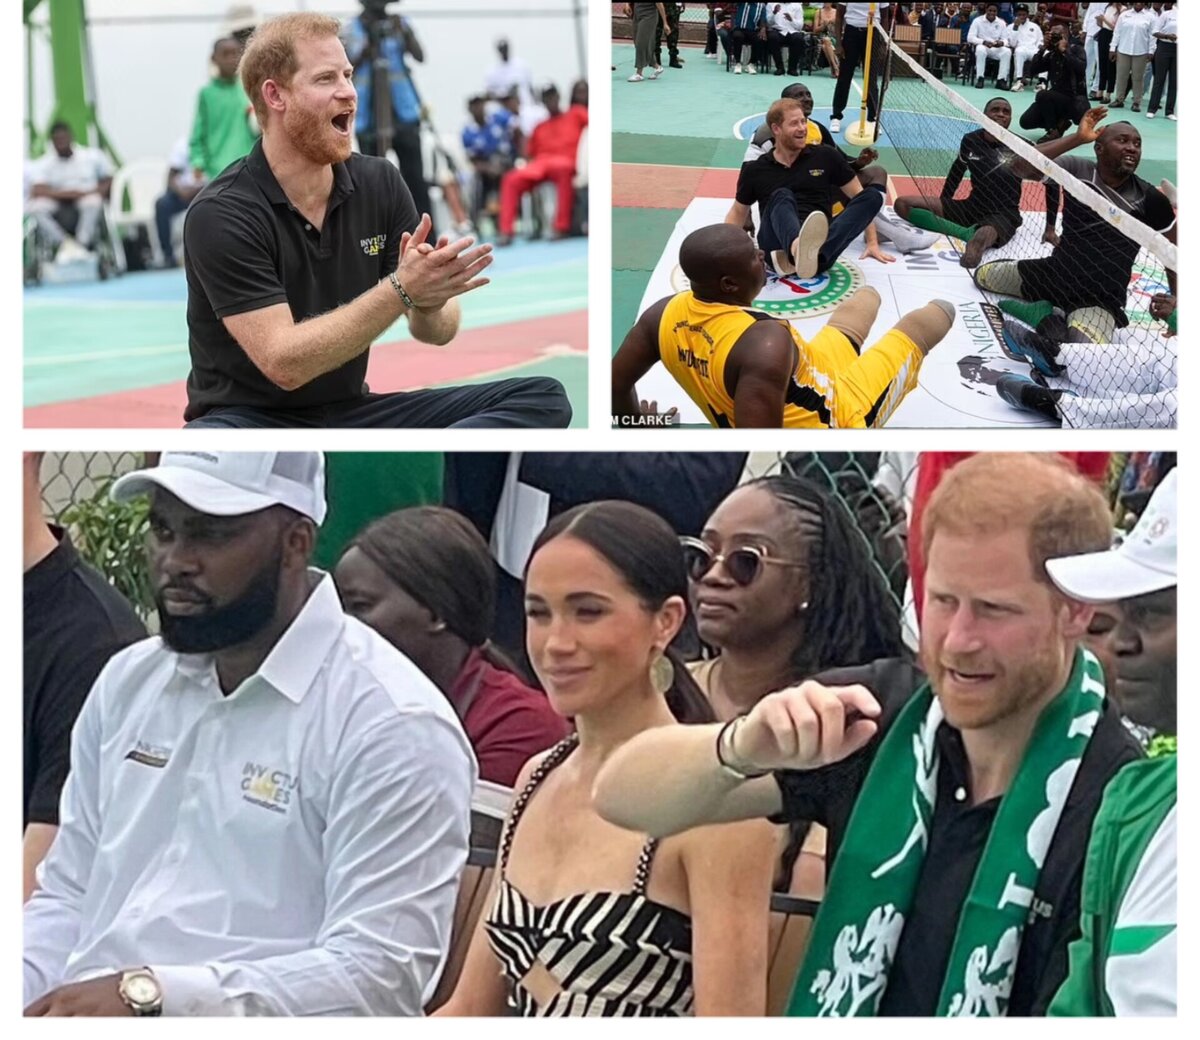     Нигерийский тур продолжается, и сегодня Меган и Гарри посетили сидячий волейбольный матч.-2